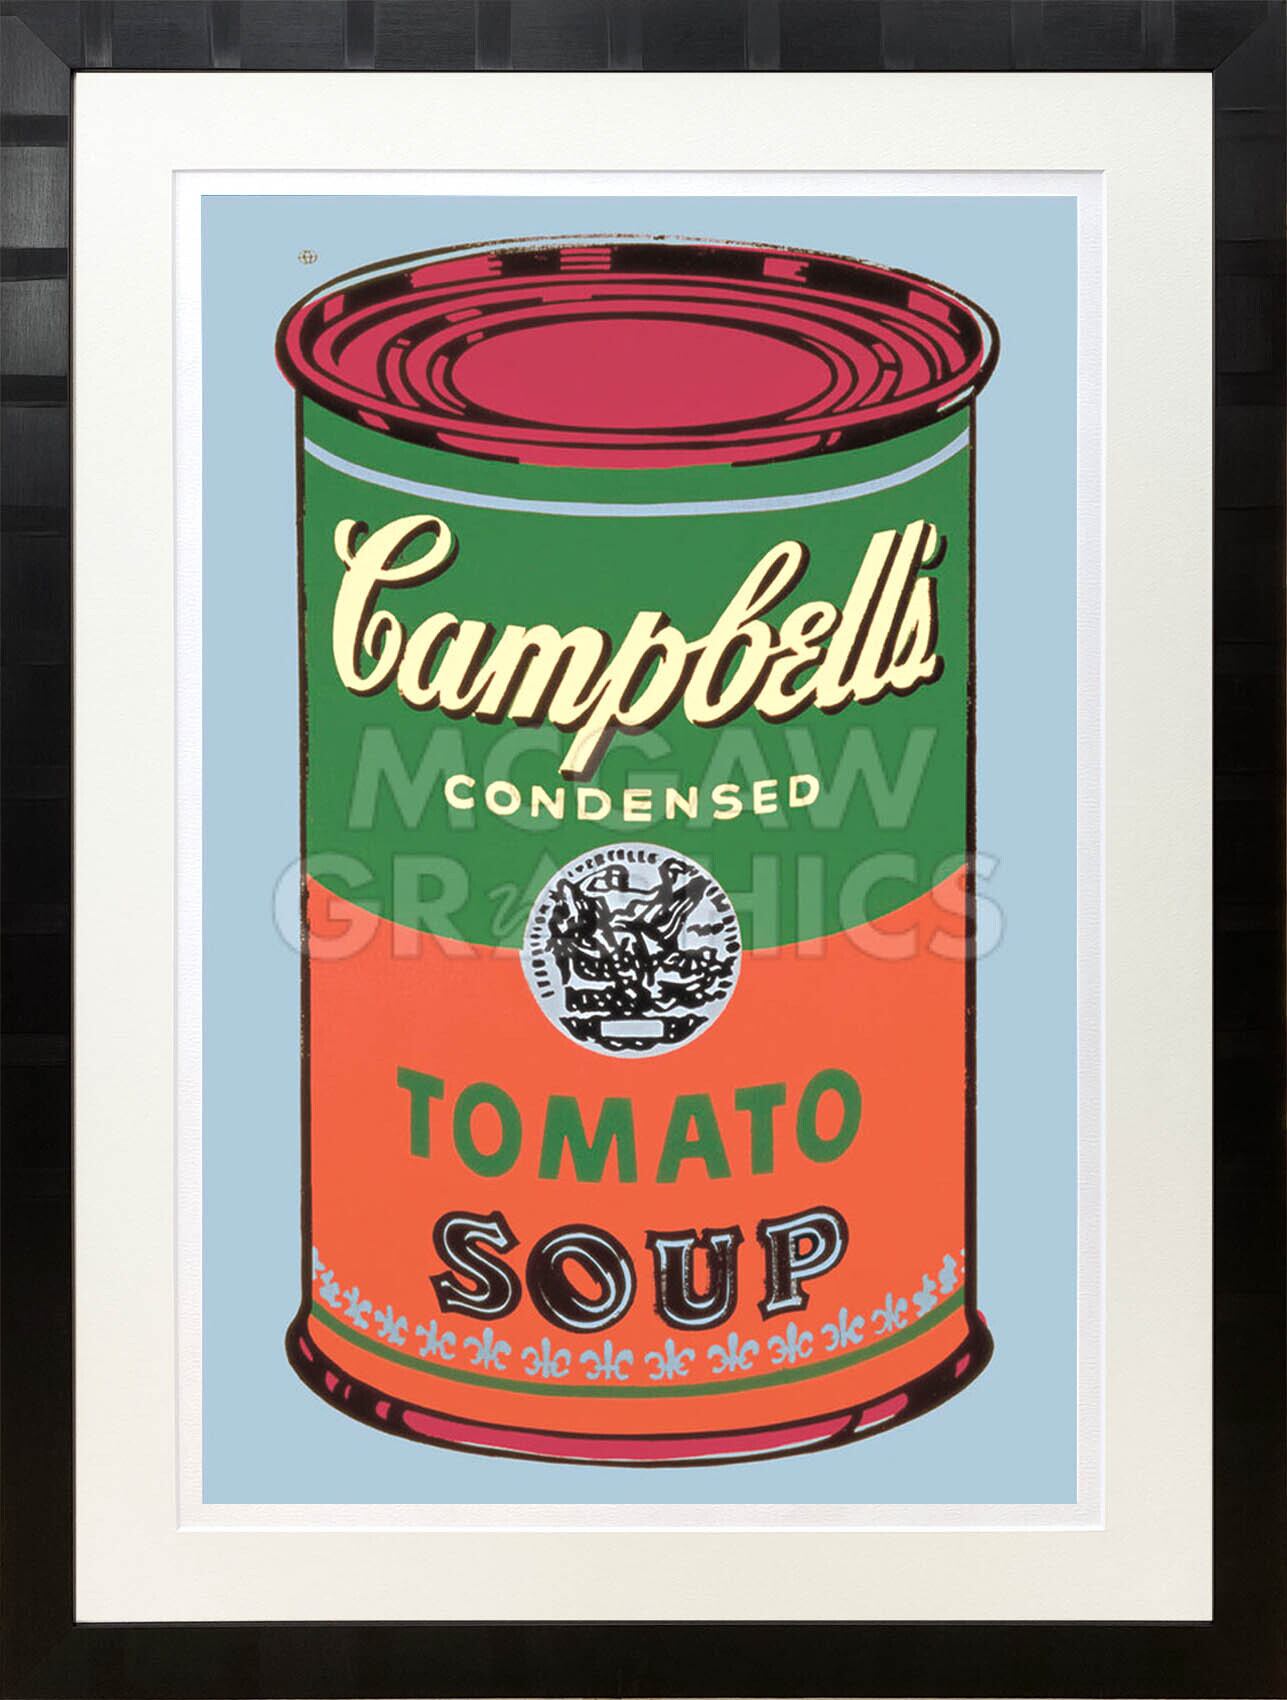 アンディ・ウォーホル「キャンベル・スープ(トマト/グリーン&レッド)1965」展示用フック付大型サイズジークレ ポップアート 絵画